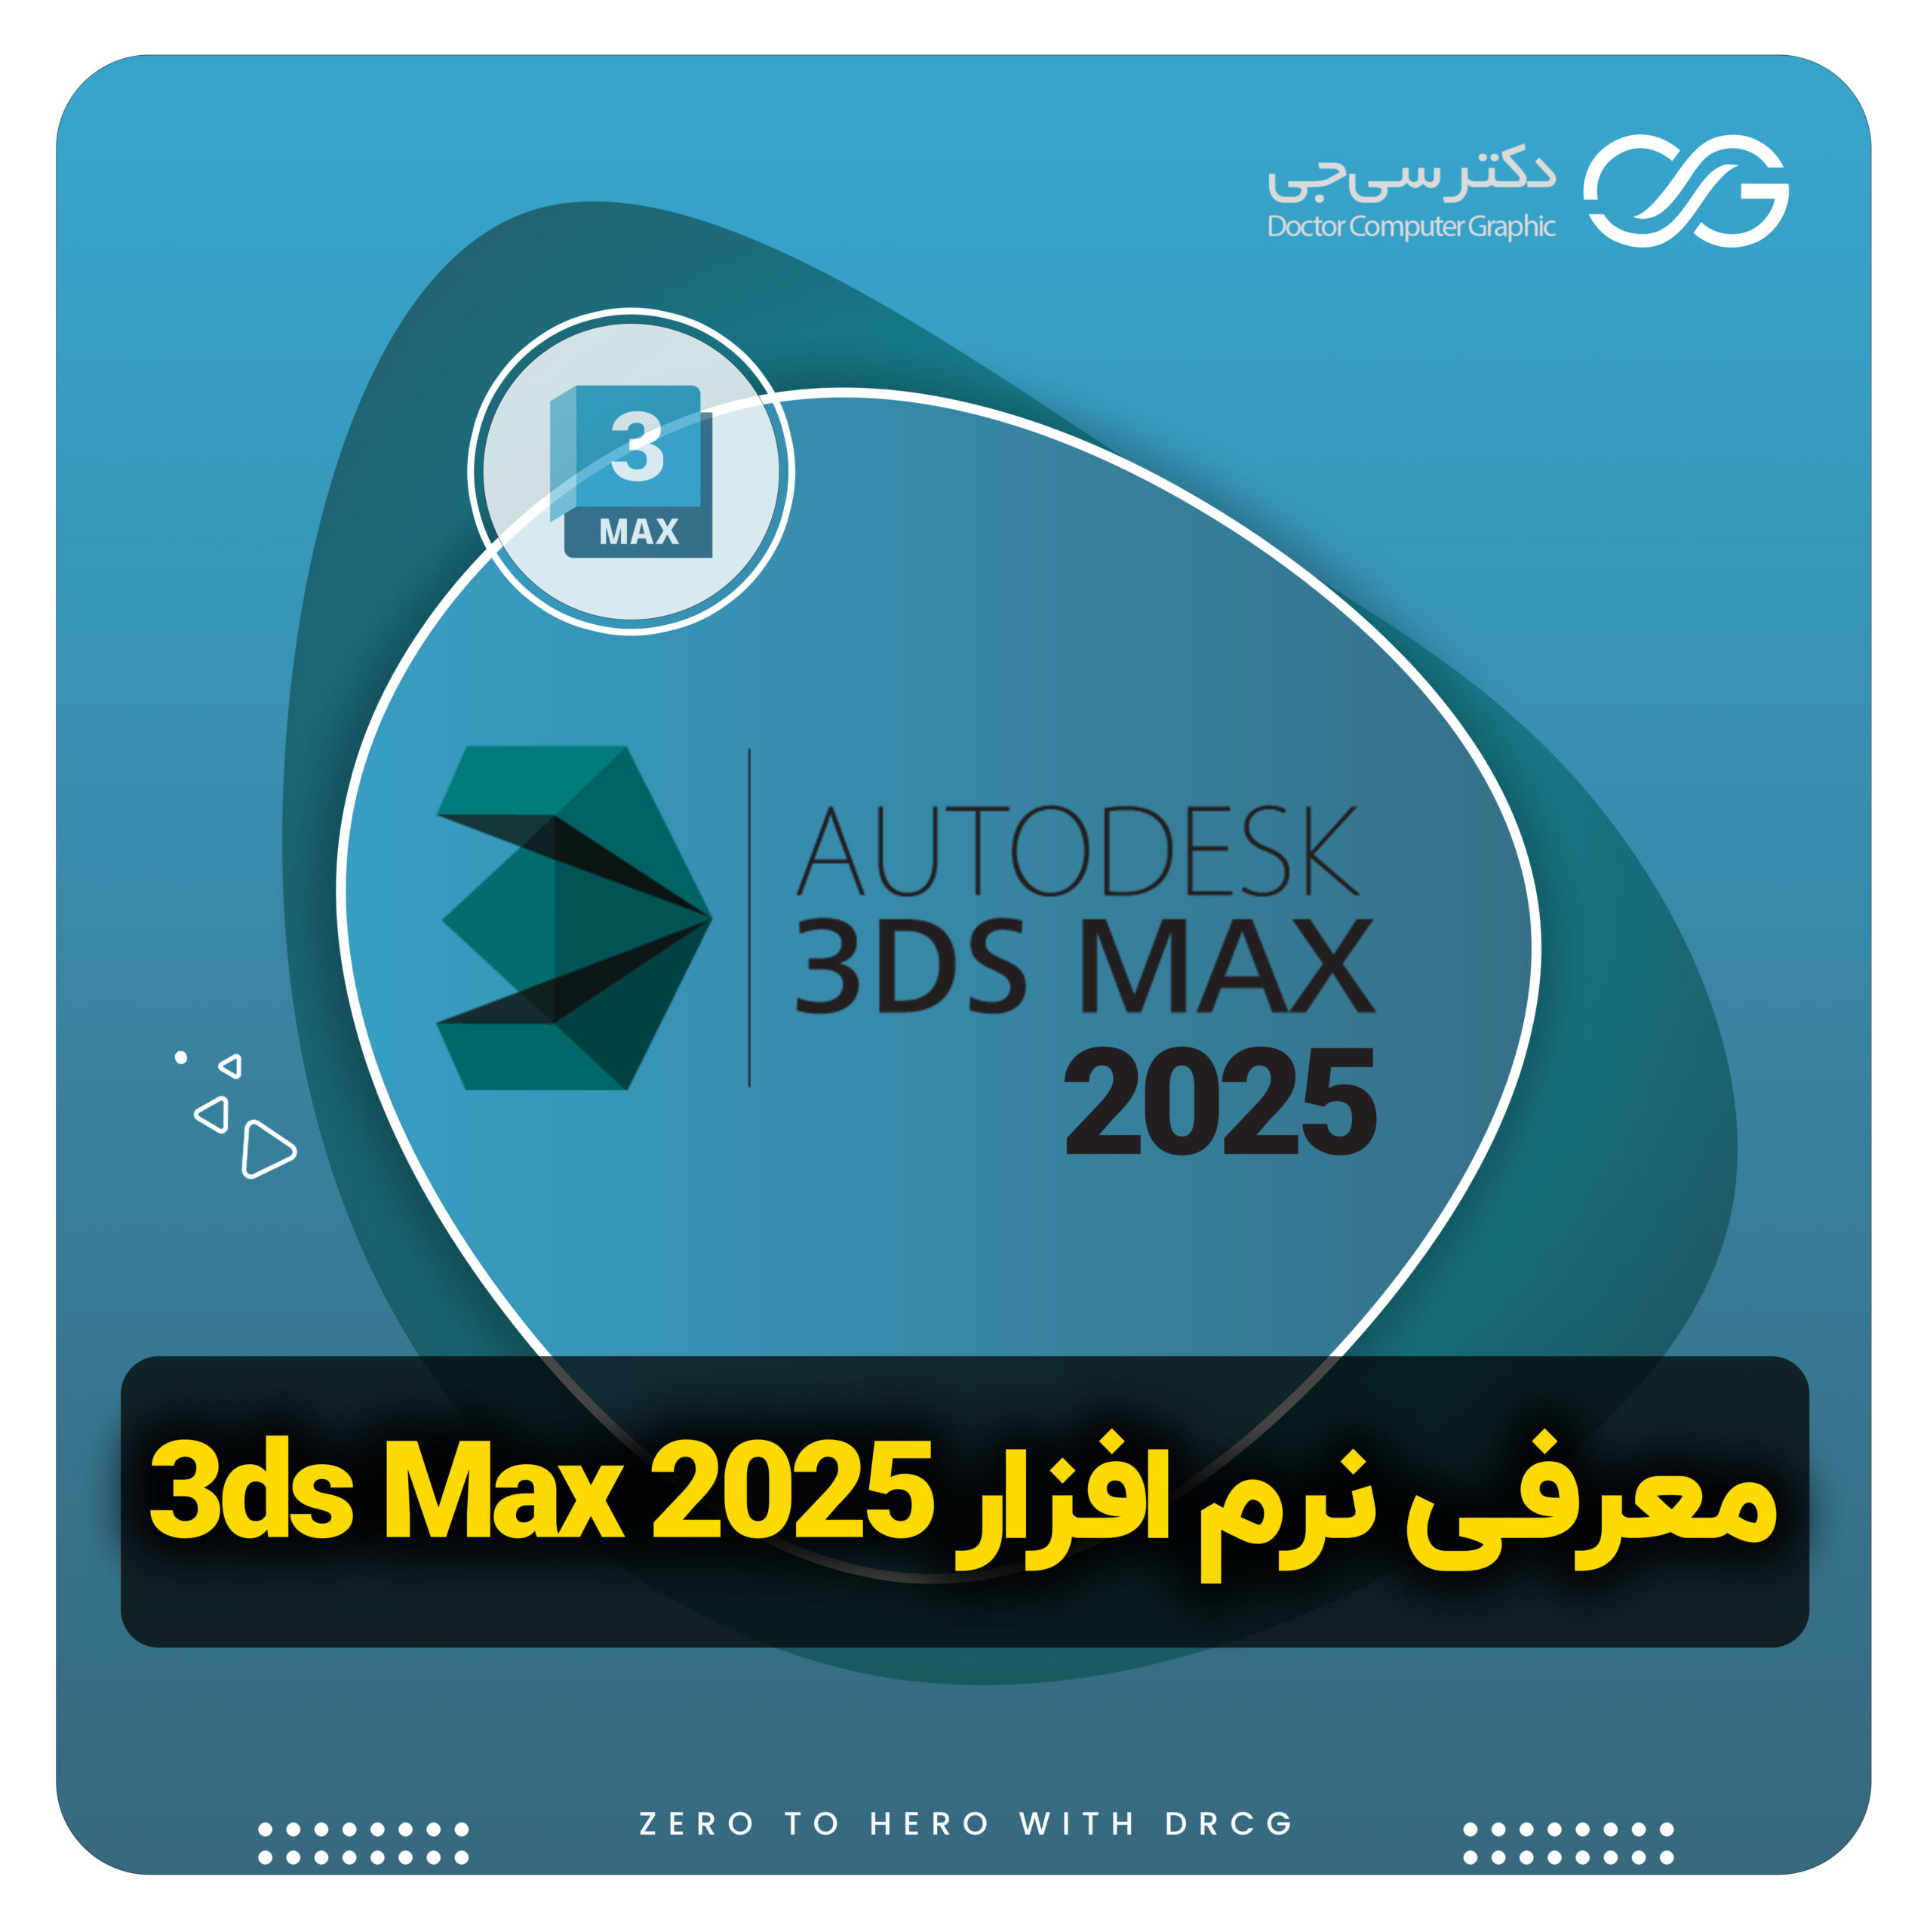 تری دی مکس 2025 | دانلود نرم افزار 3ds max 2025